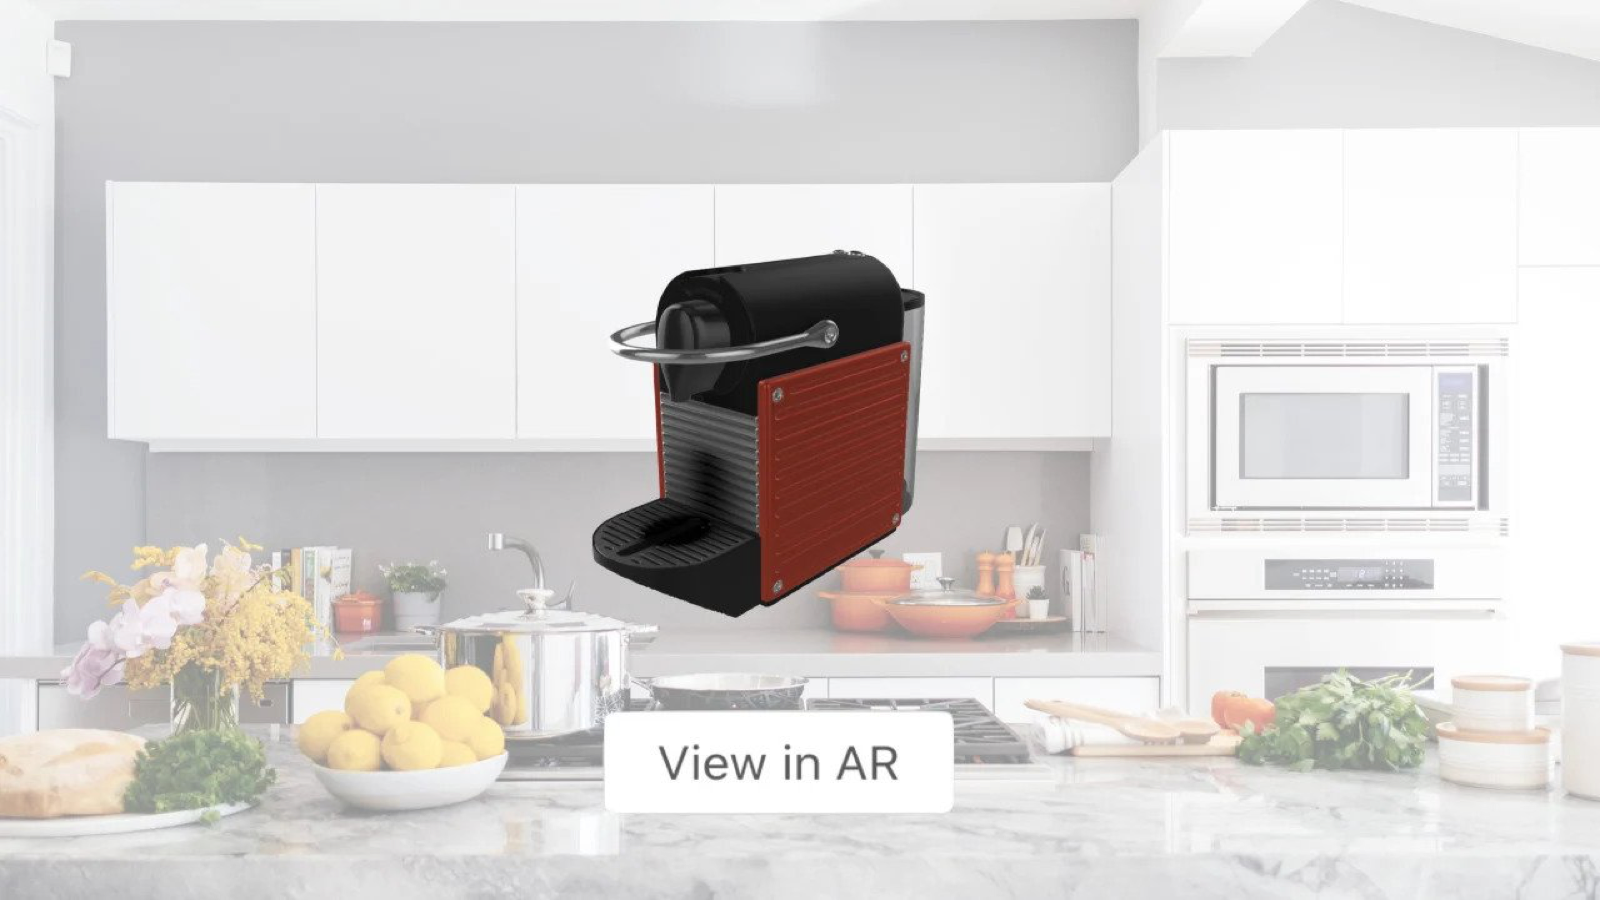 Permettez aux acheteurs de placer des produits dans leur maison avec AR